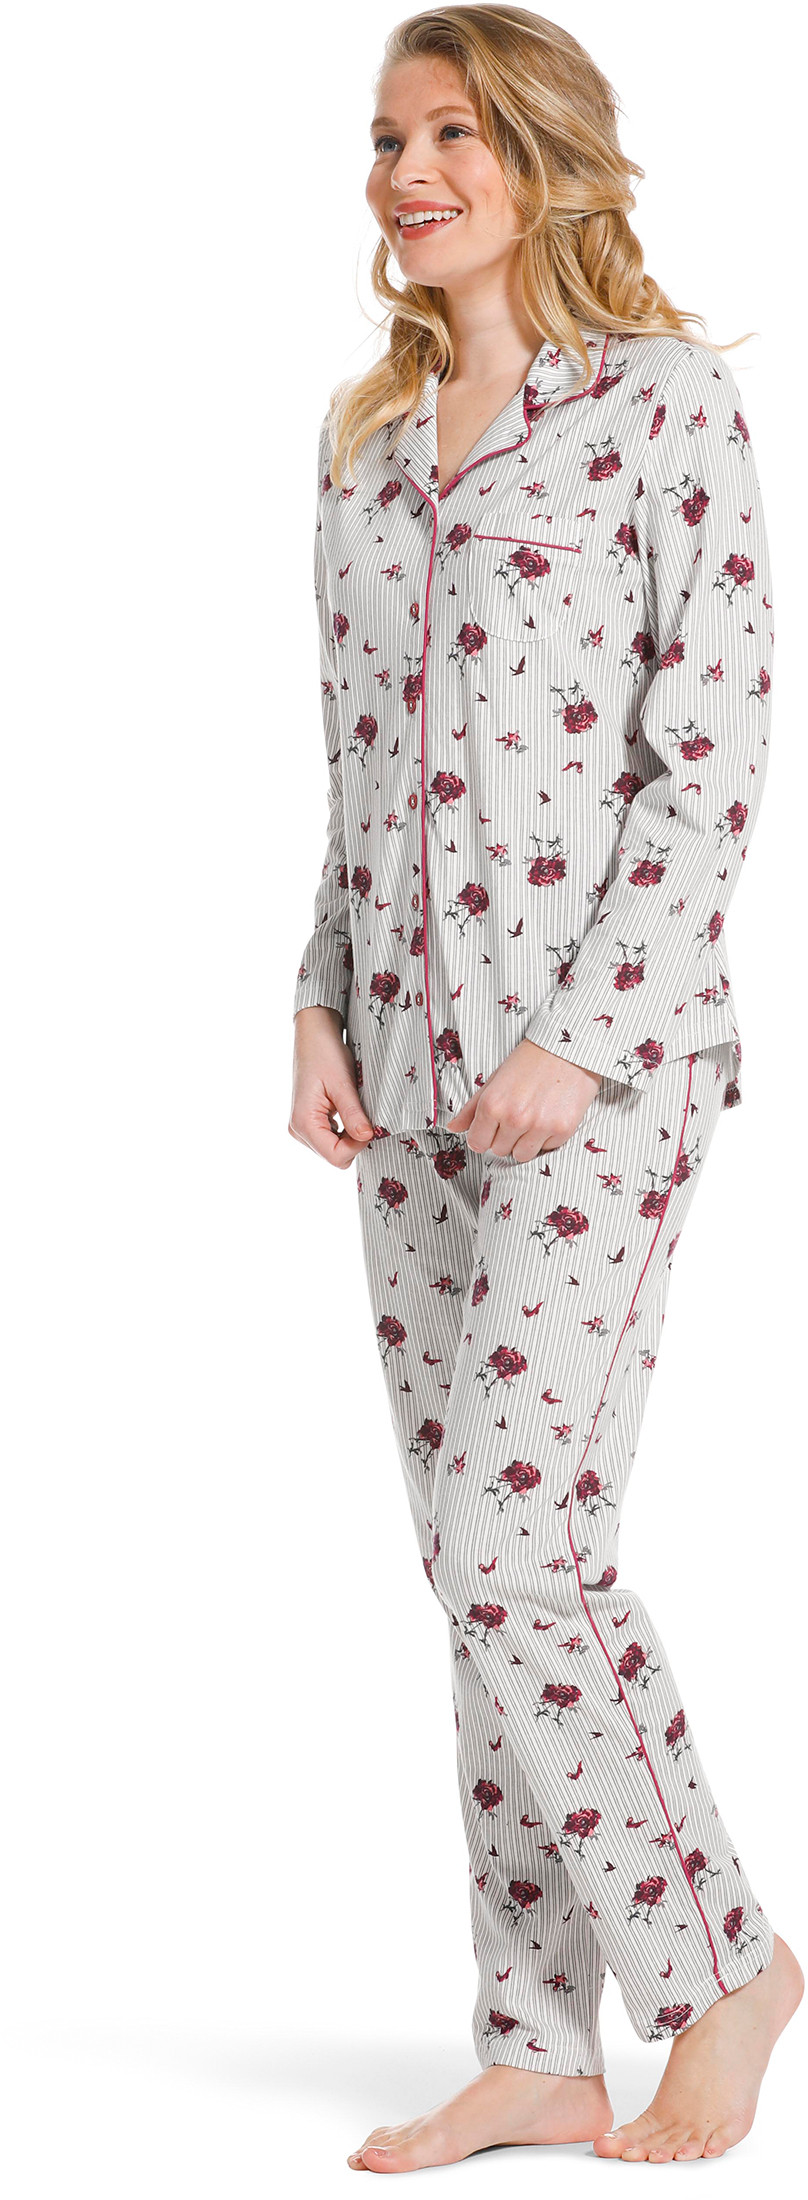 Pastunette doorknoop dames pyjama 20222-156-6-48